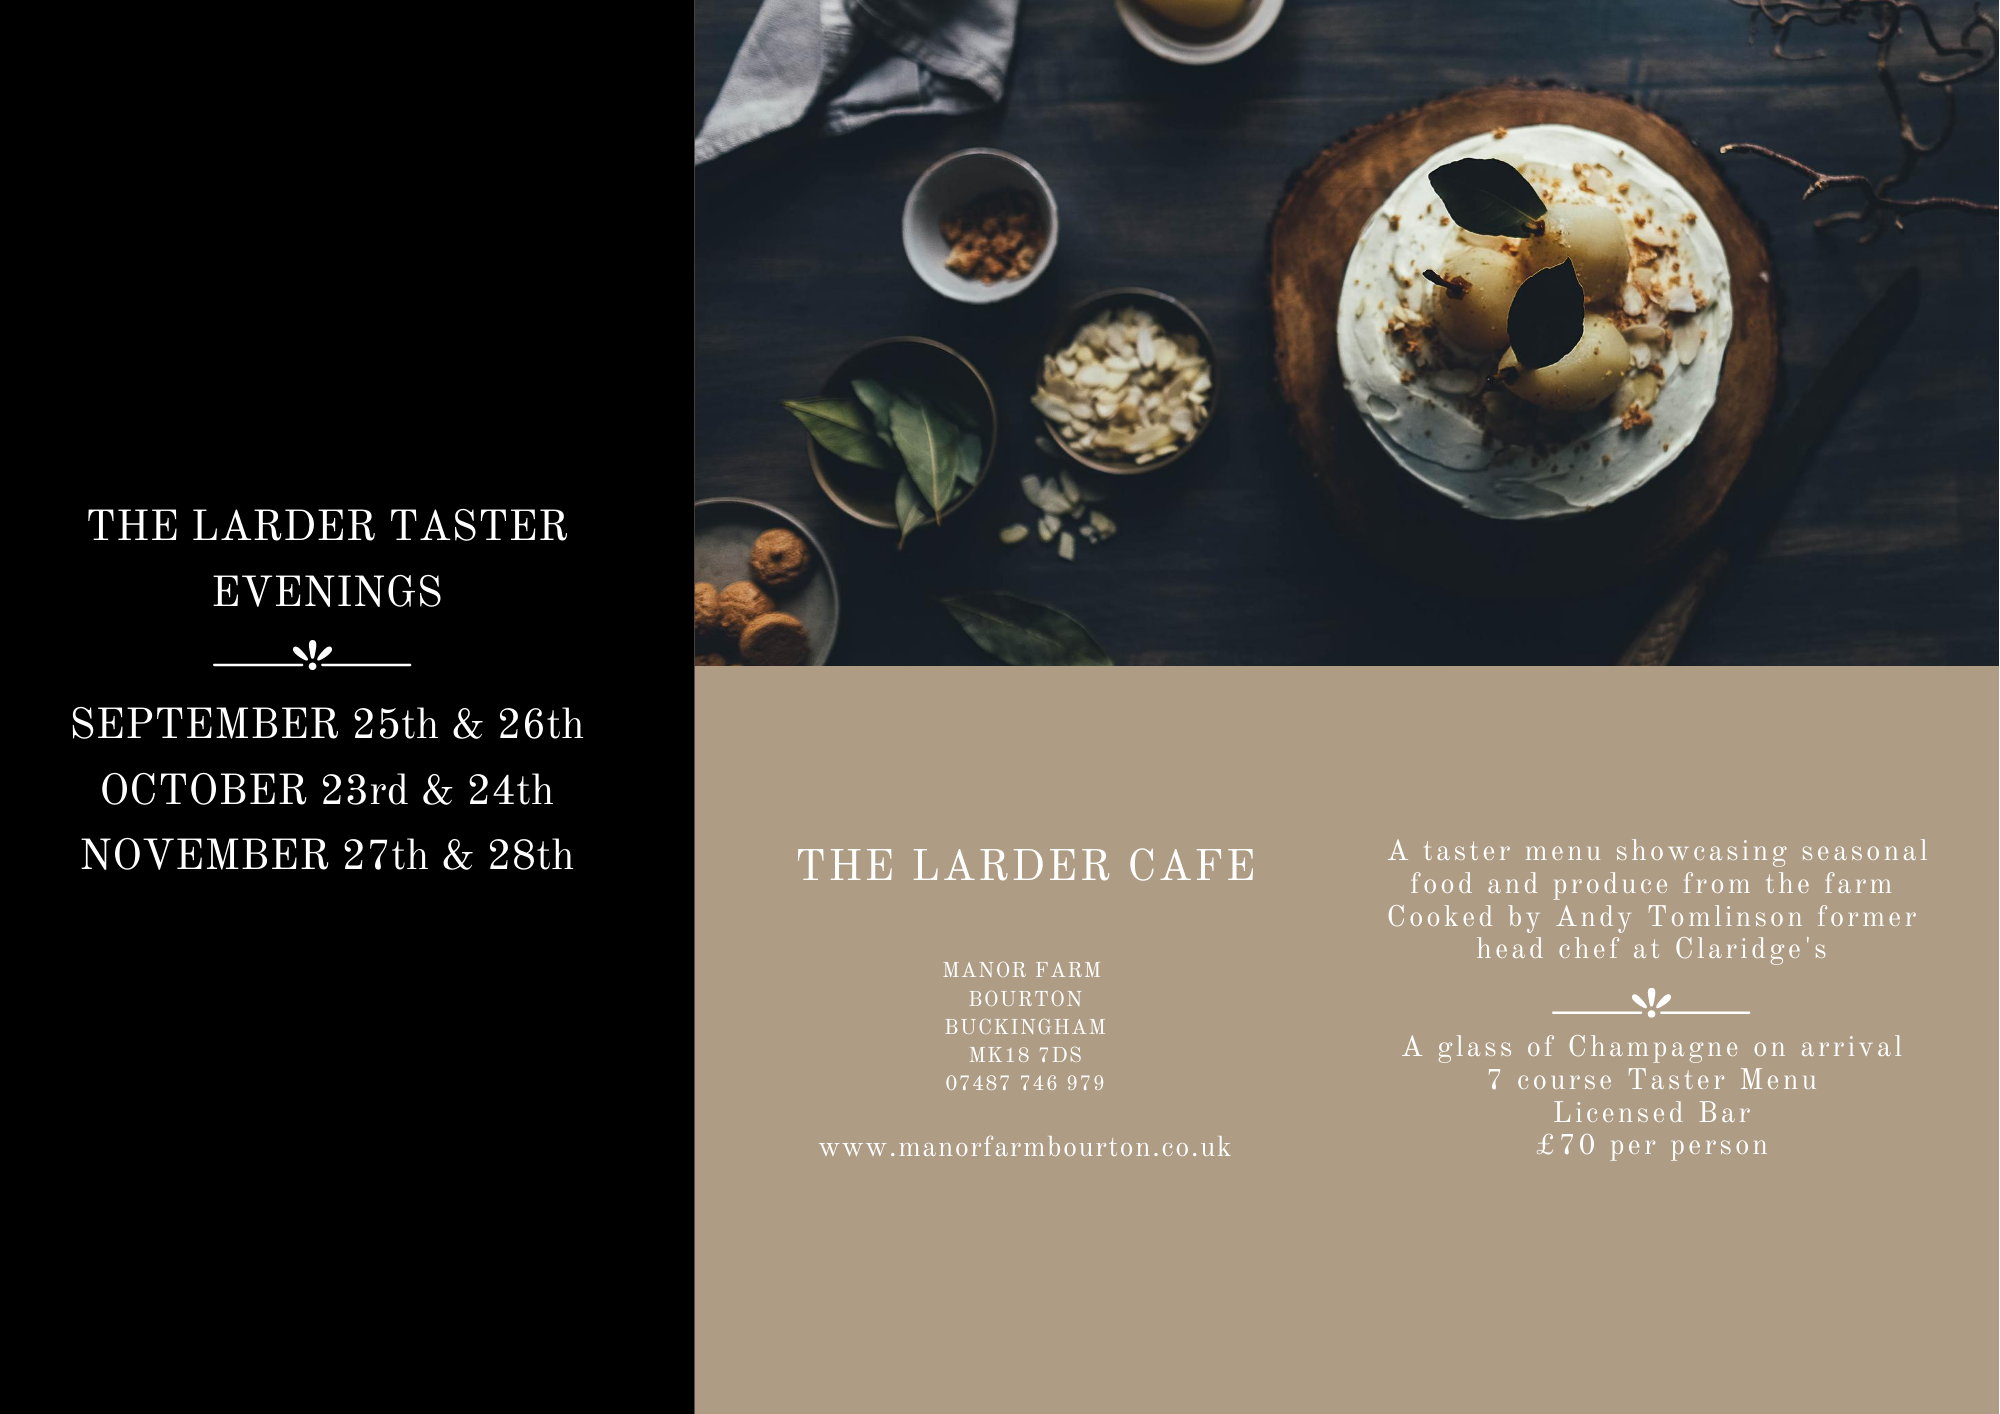 The Larder Taster Evenings